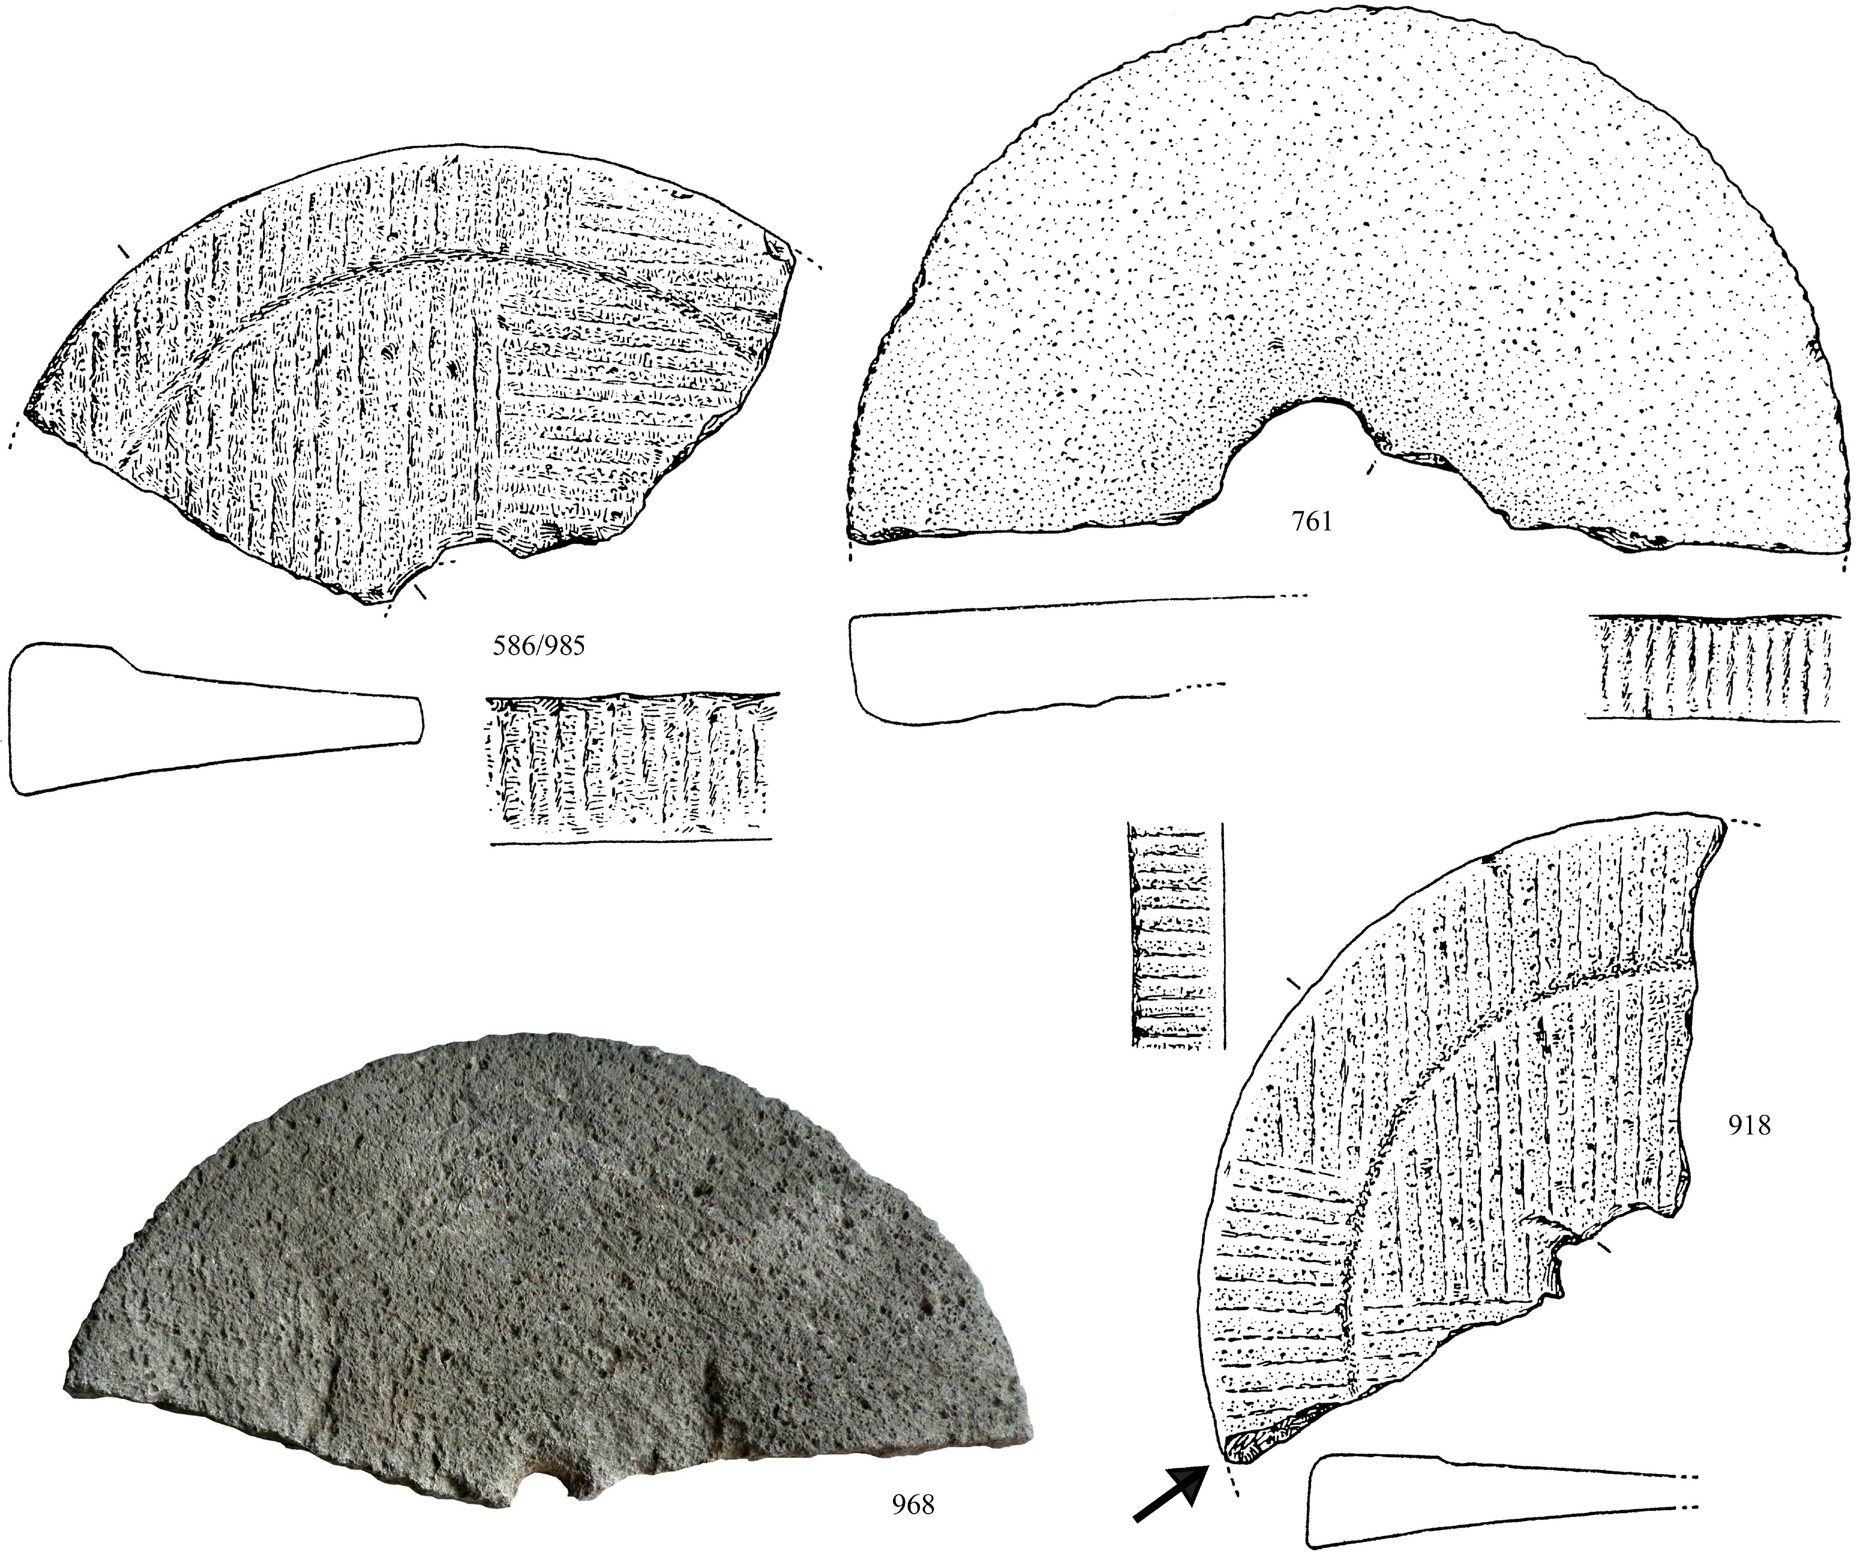 Het gebruik van natuursteen in Ezinge Fig. 11 Fragmenten van maalstenen van basaltlava uit de Eifel, type Westerwijtwerd. De zwarte pijl wijst naar een hakspoor. Schaal 1:5. Tekeningen: H.